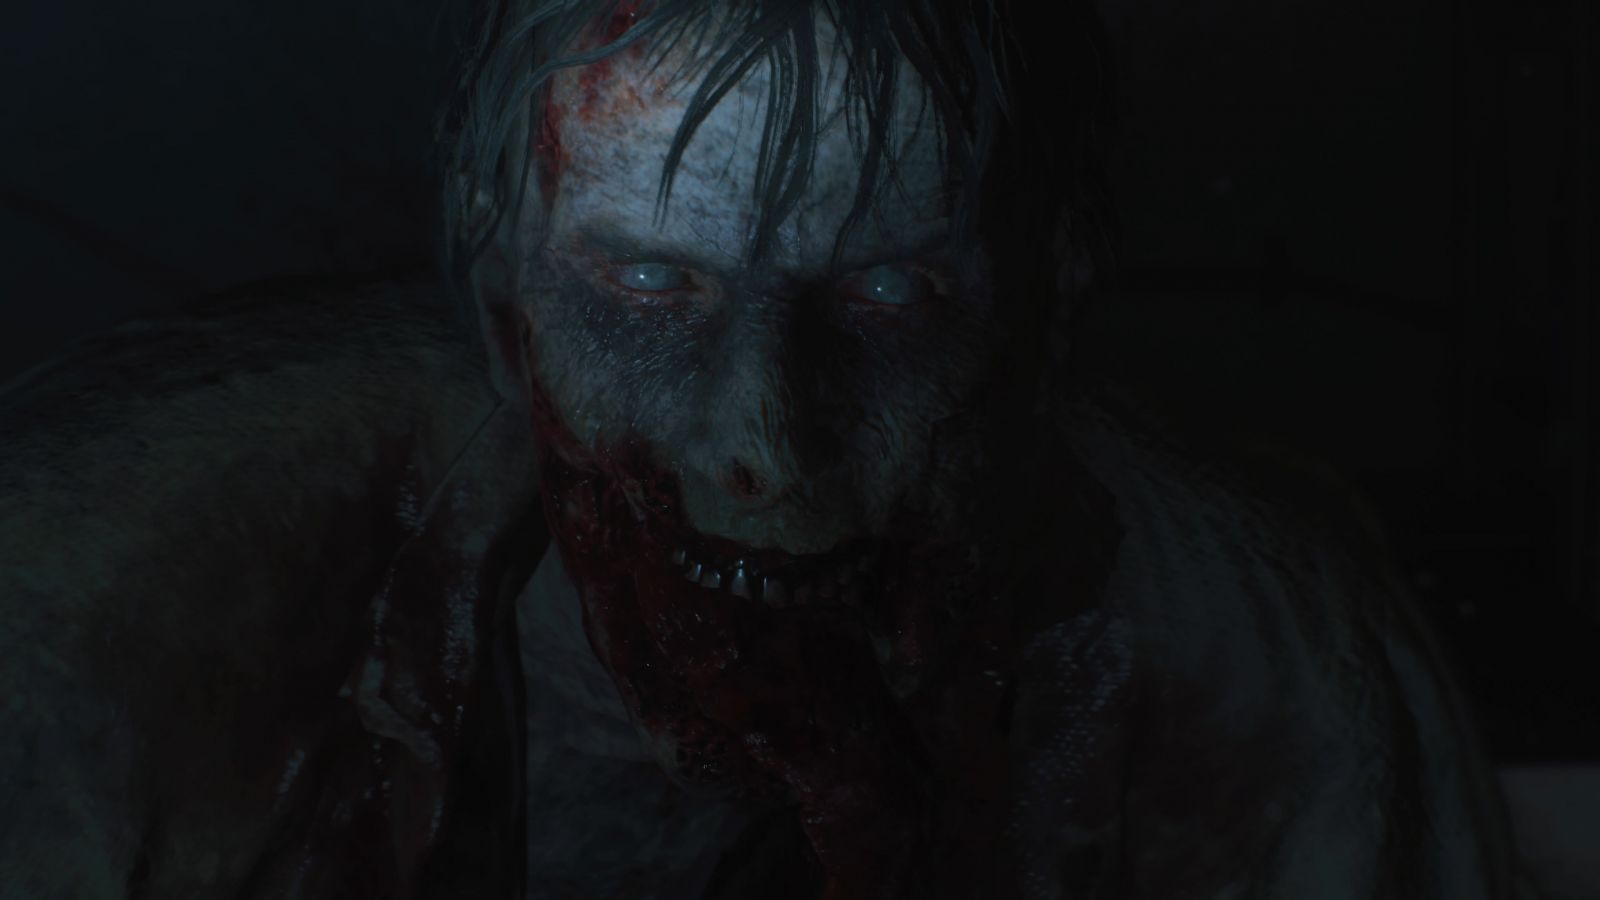 Resident Evil 2 vracia sériu na vrchol. Perfektný survival horor ti neraz naženie husiu kožu (Recenzia)